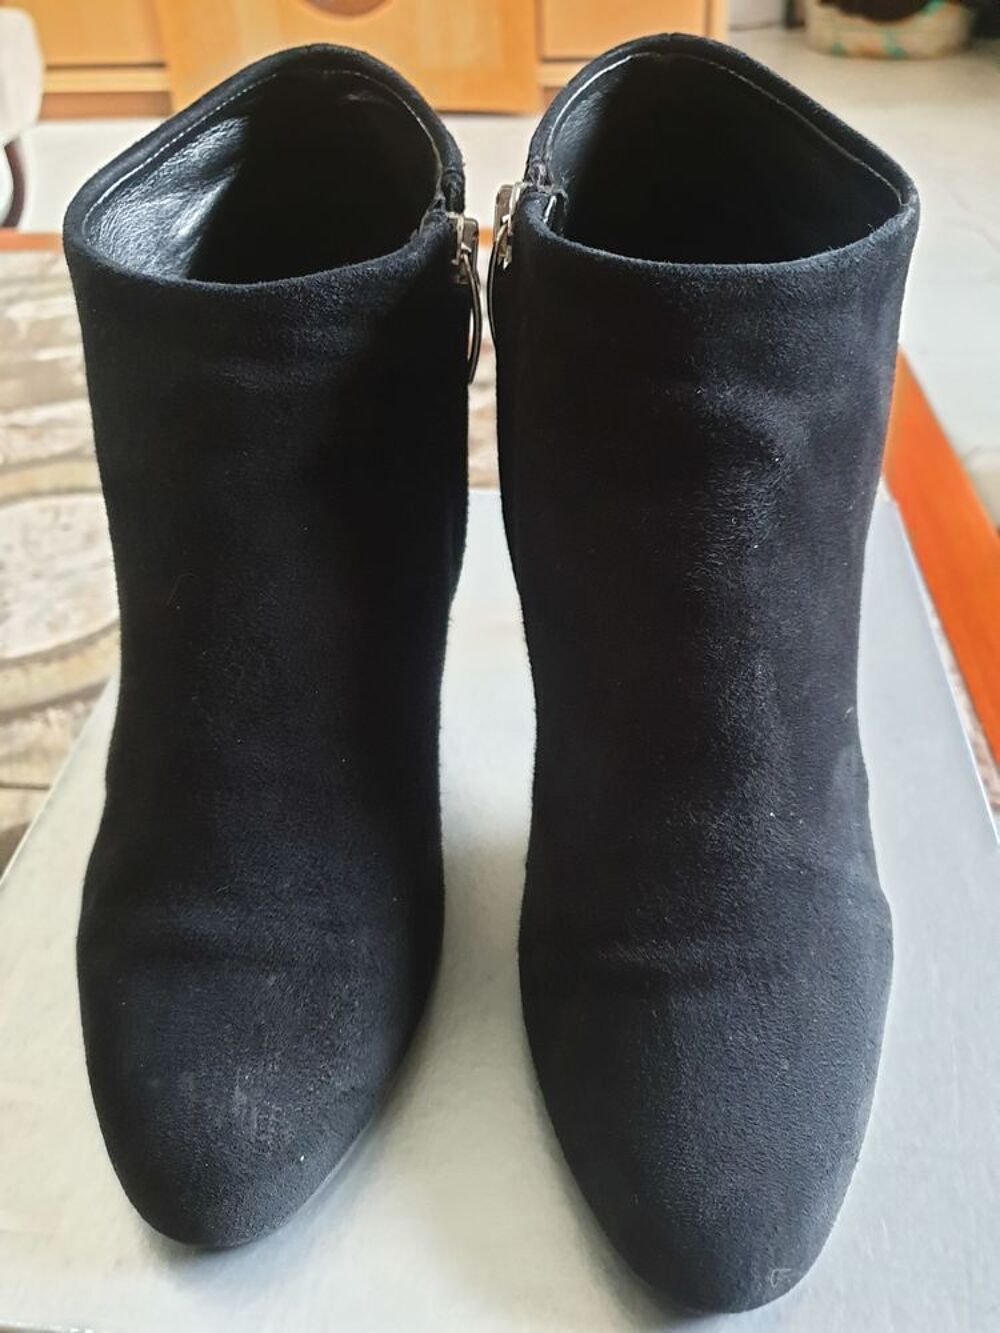 Boots EDEN en daim (cuir) noir, T 39, talon 9cm, en TBEtat Chaussures